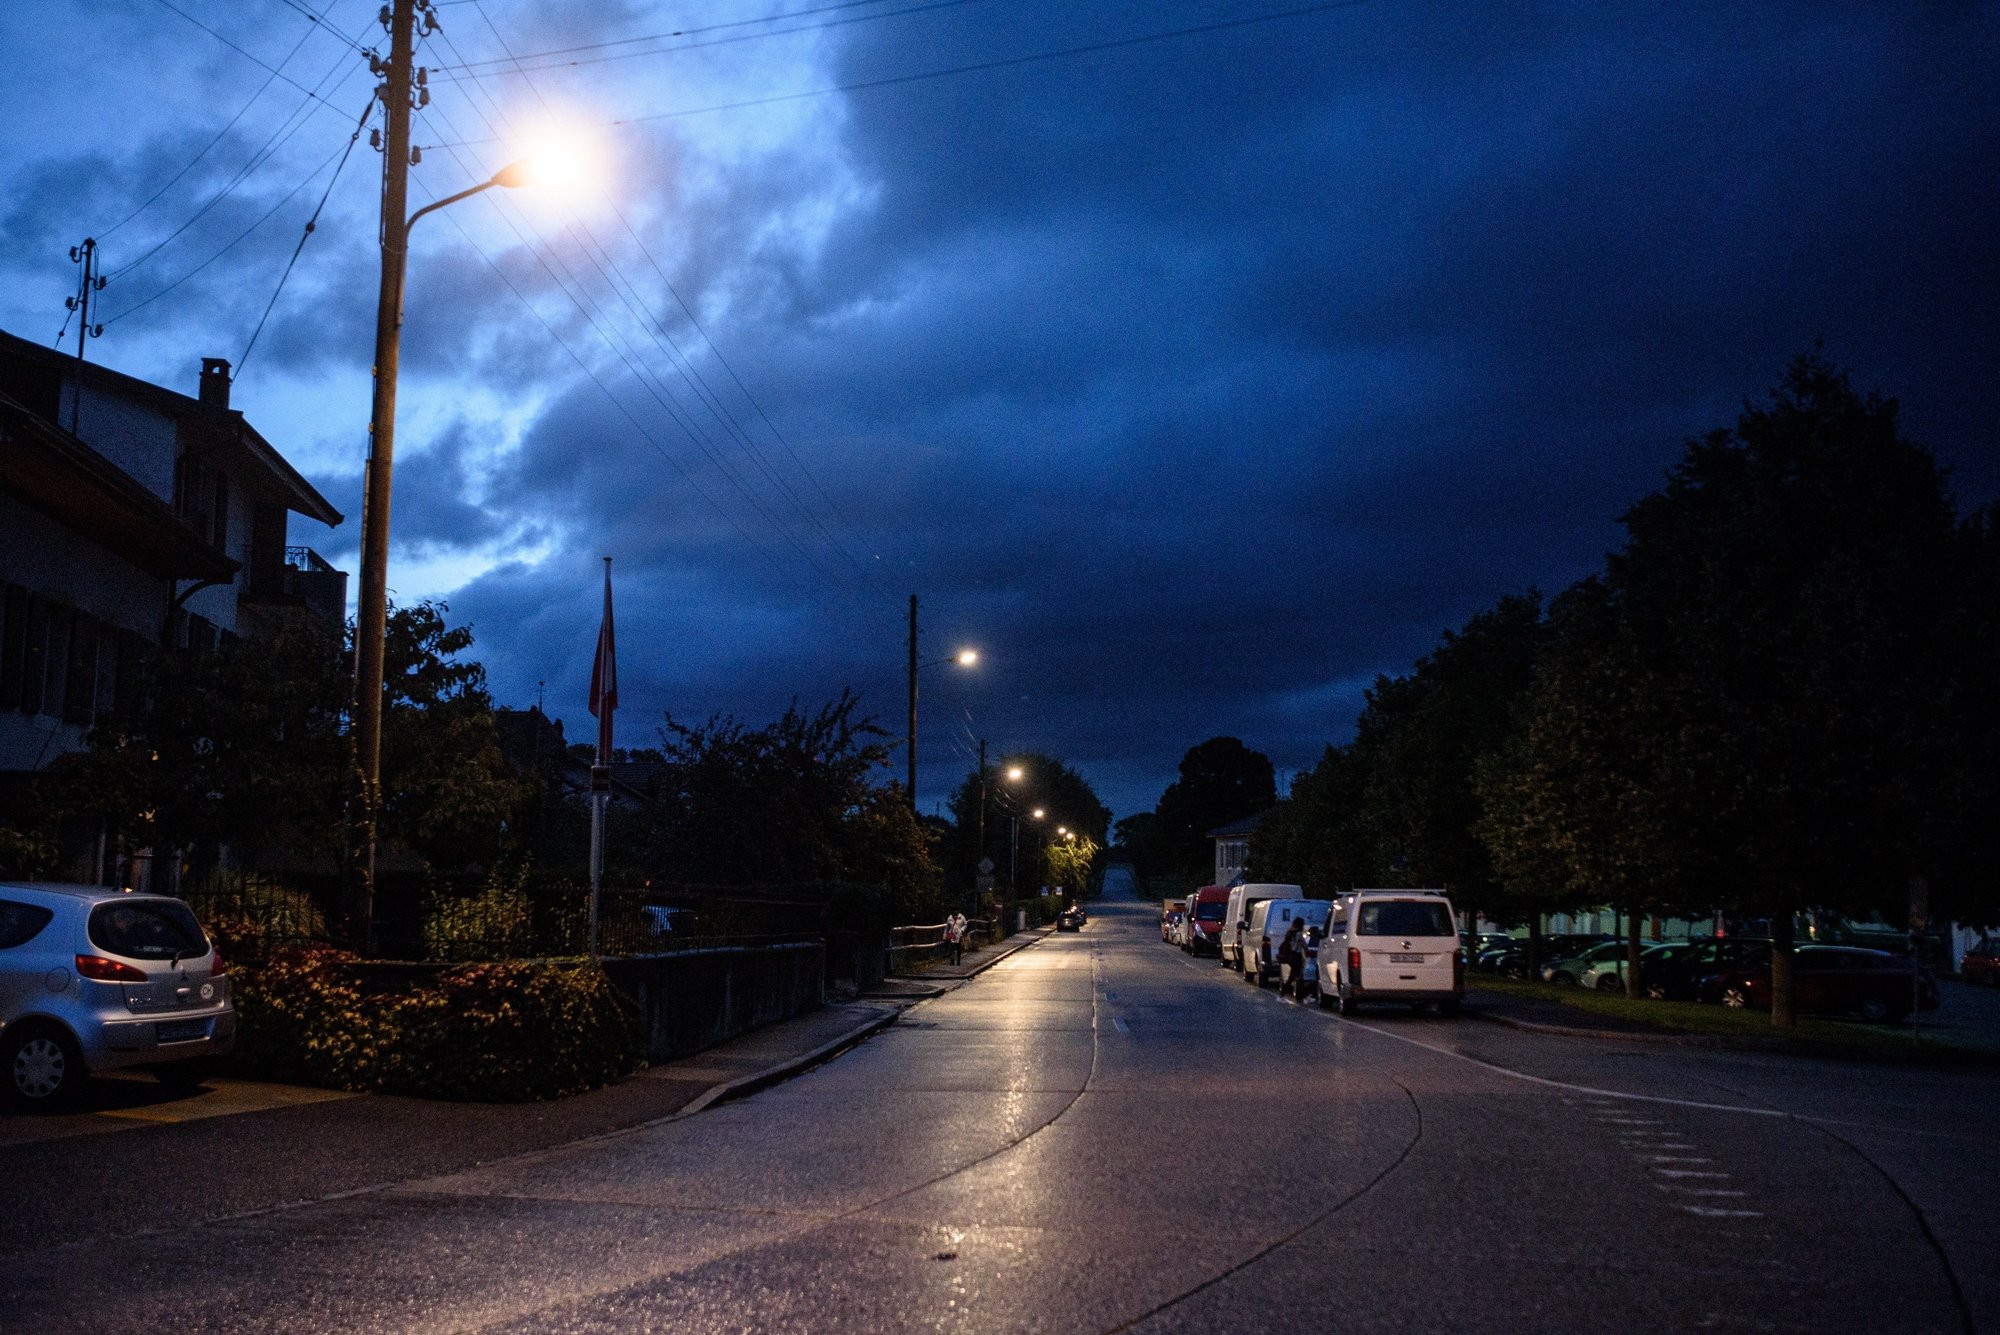 Certaines communes de la région ont décidé d'éteindre leur éclairage public la nuit, d'autres de le diminuer. D'autres sont encore en réflexion.